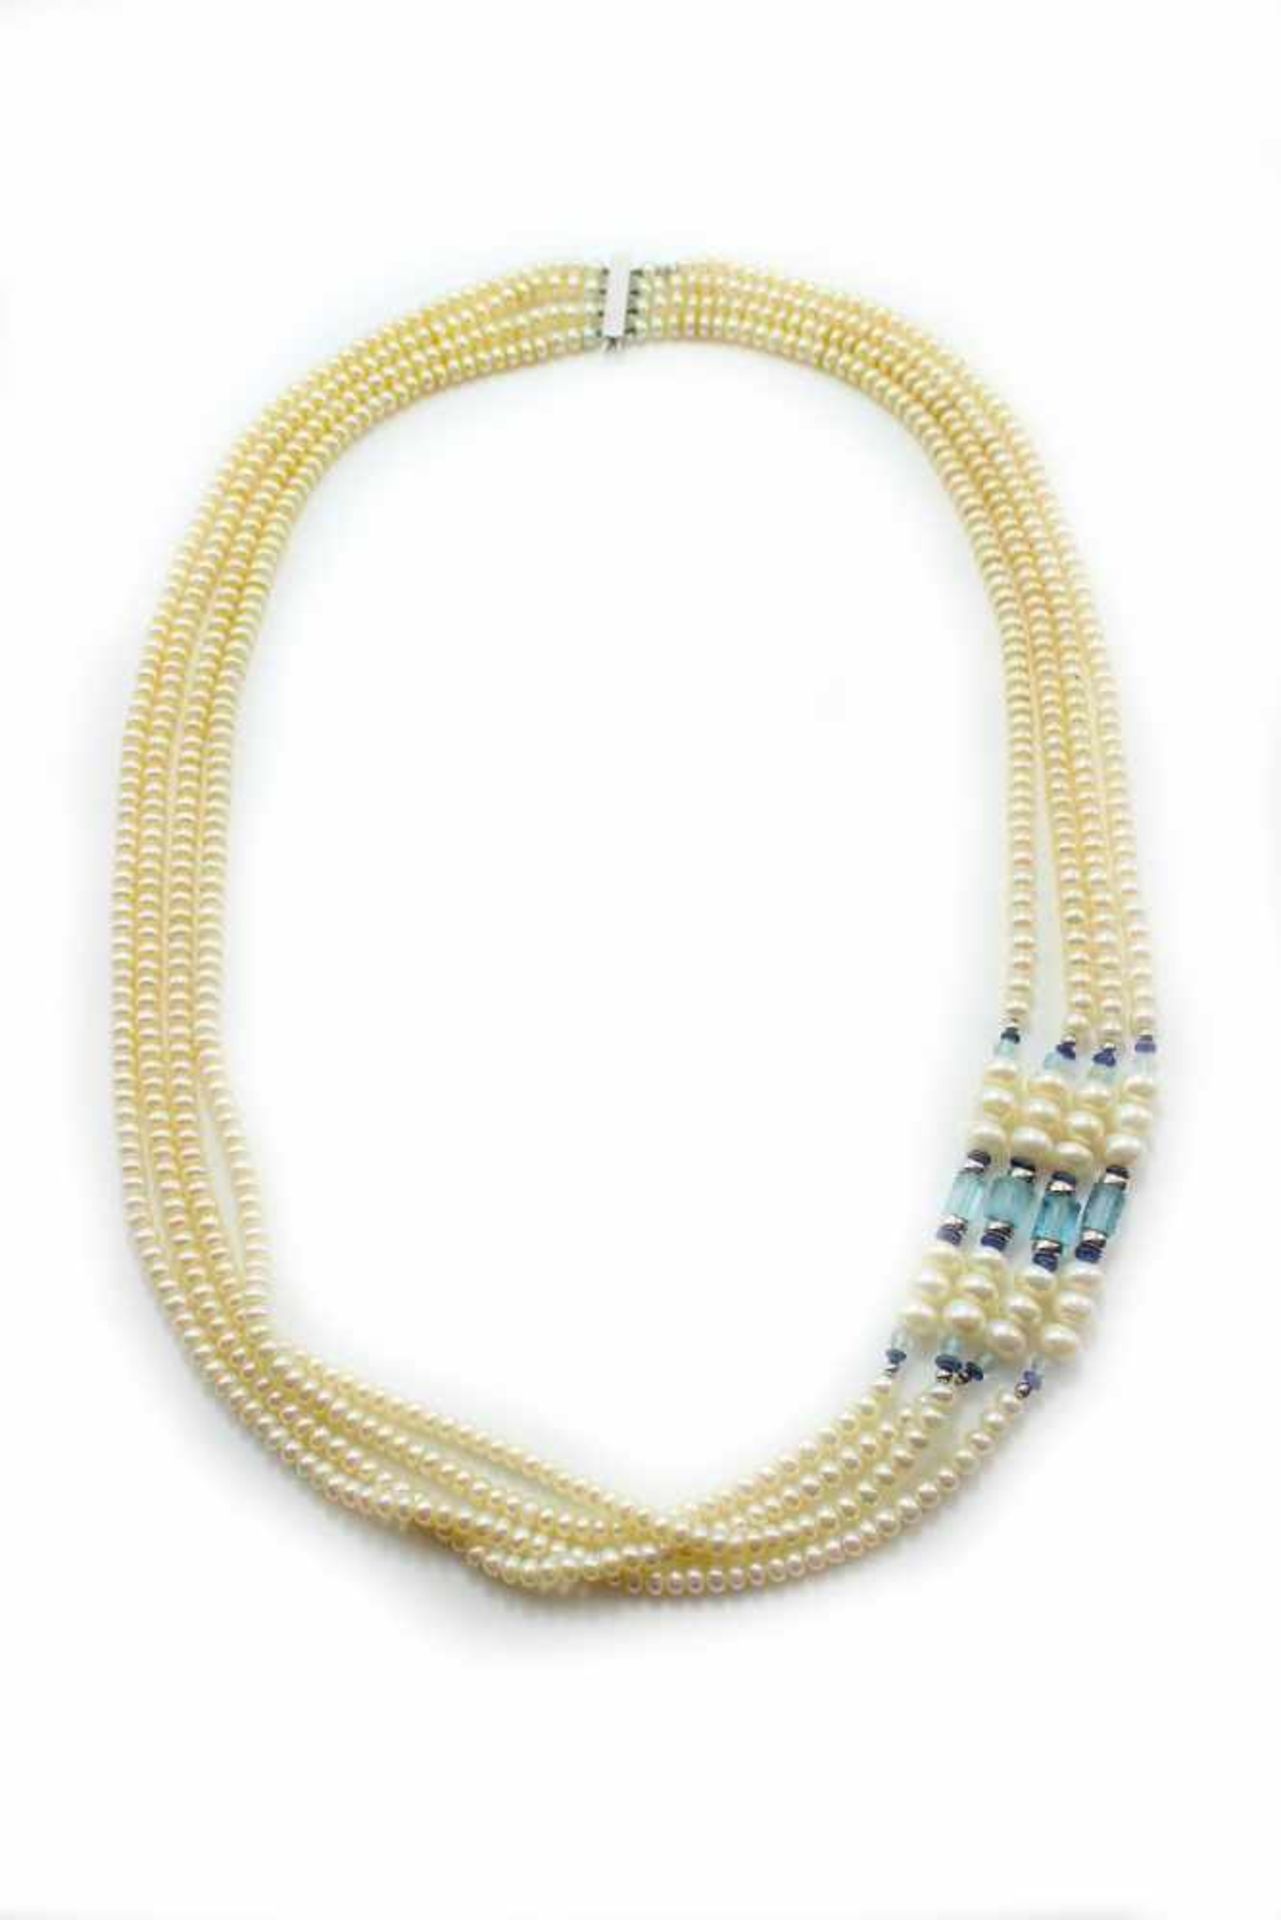 Perlenkette - Marke Schöffel 4-reihig, mit Aquastegen/Kugeln und Weißgoldringen, WG-Verschluss gest.